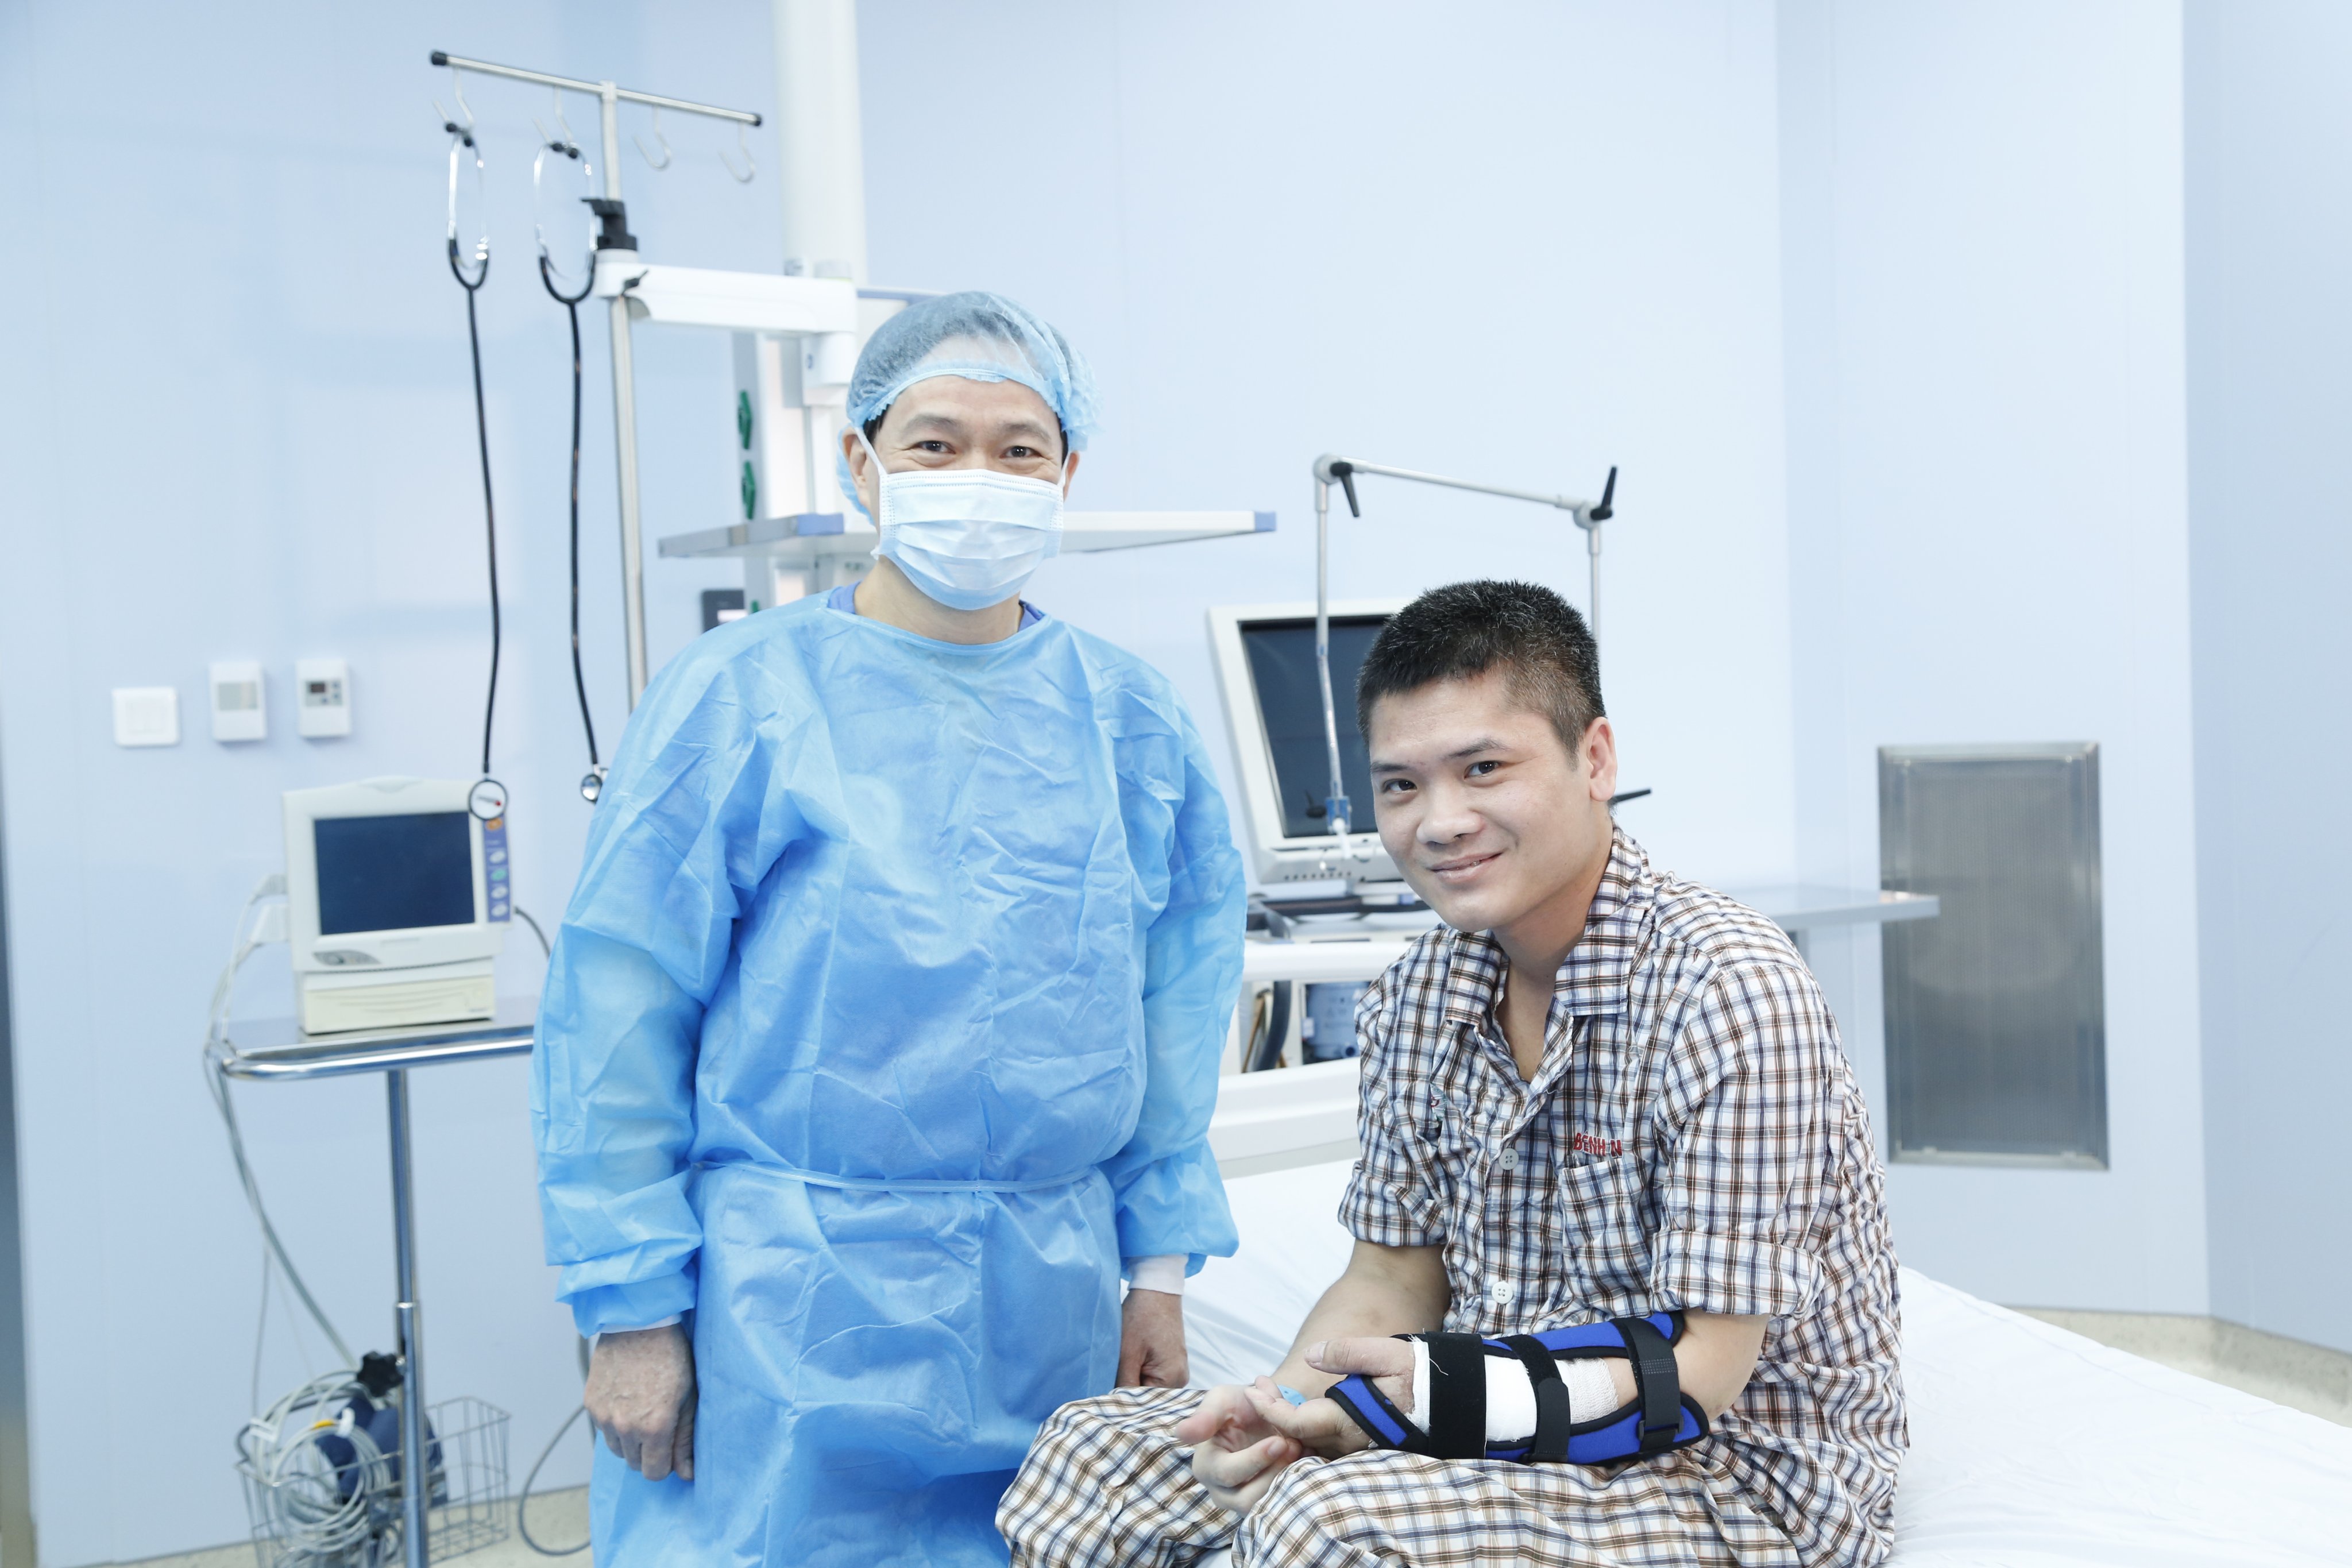 Giáo sư Hoàng và bệnh nhân Vương vui mừng vì ca phẫu thuật thành công. (Ảnh: PV/Vietnam+)